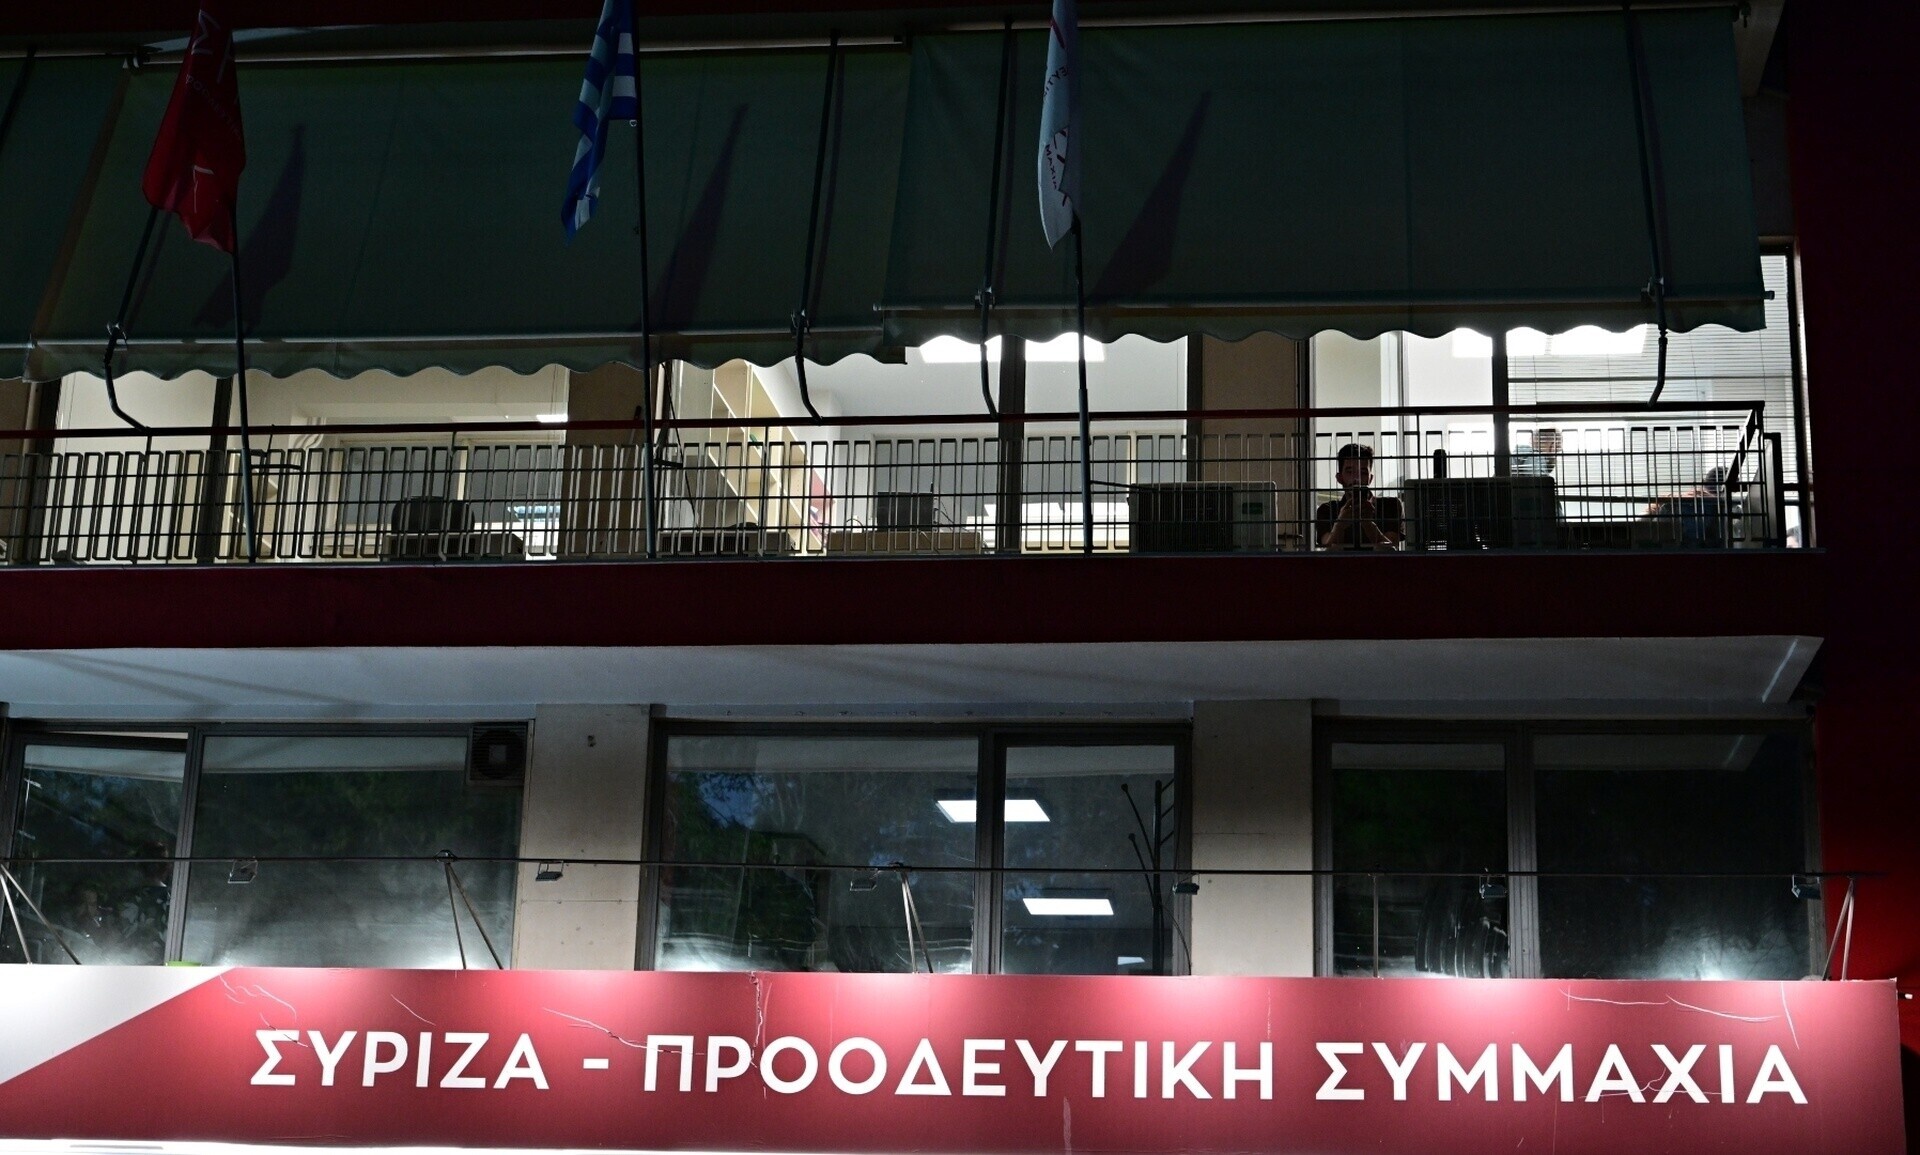 Ανακοινώθηκαν οι υποψήφιοι του ΣΥΡΙΖΑ για τις Ευρωεκλογές